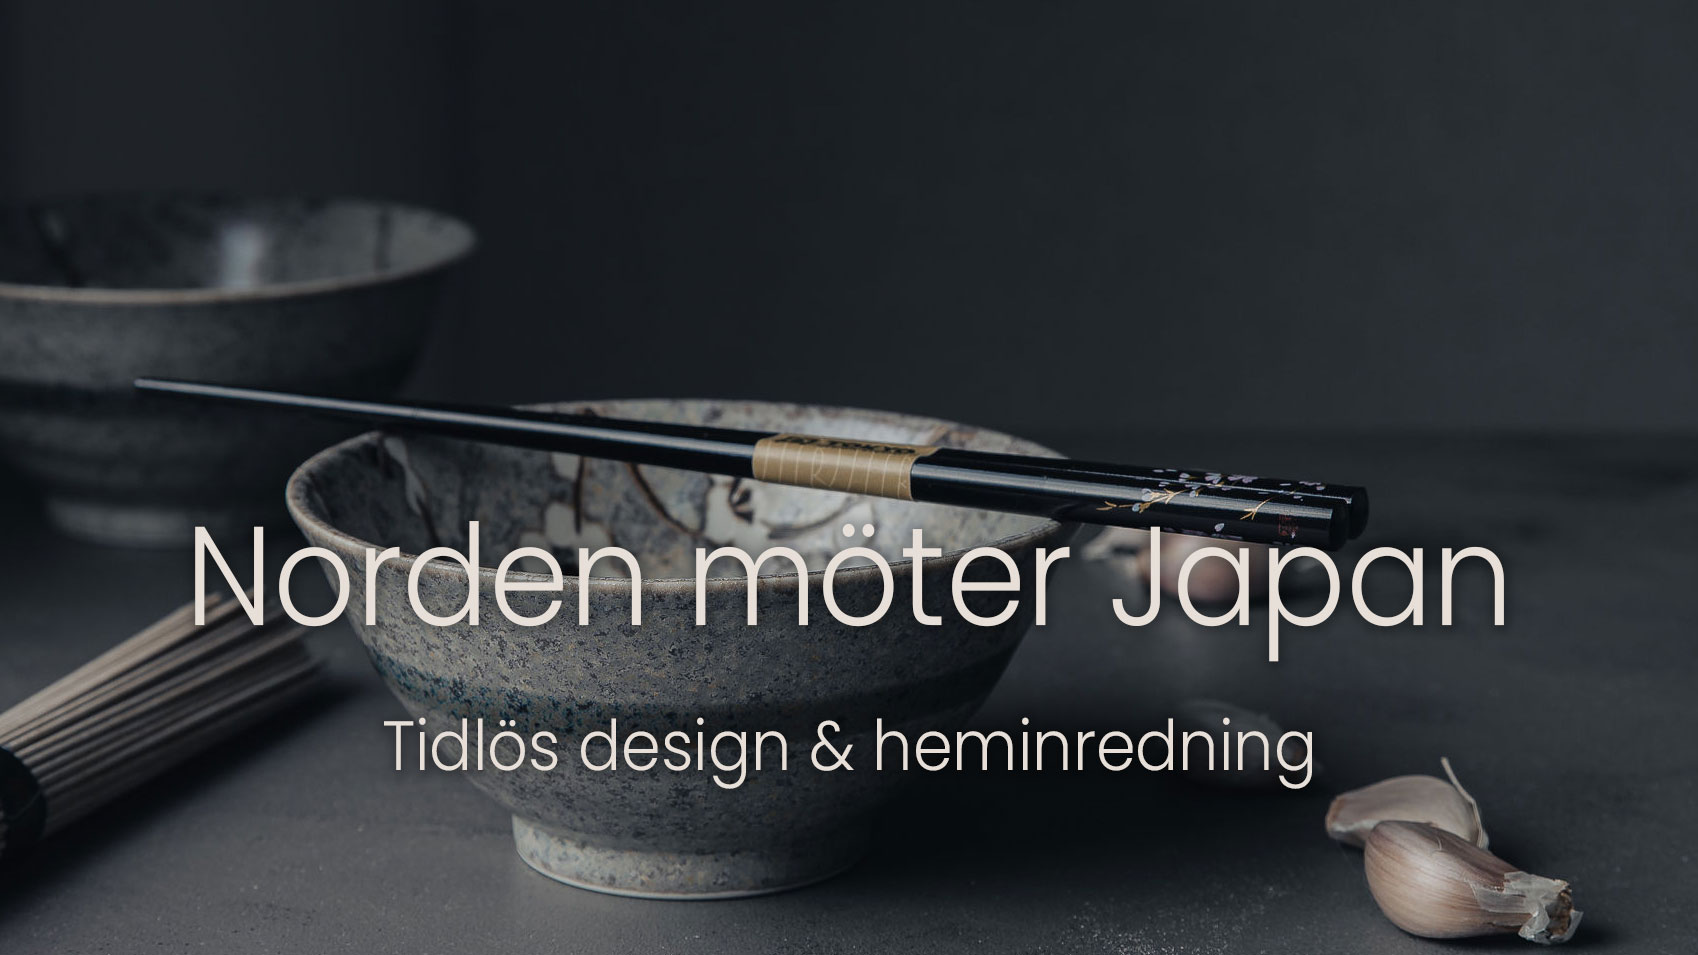 Norden möter Japan i tidlös design och heminredning hos Cobosabi